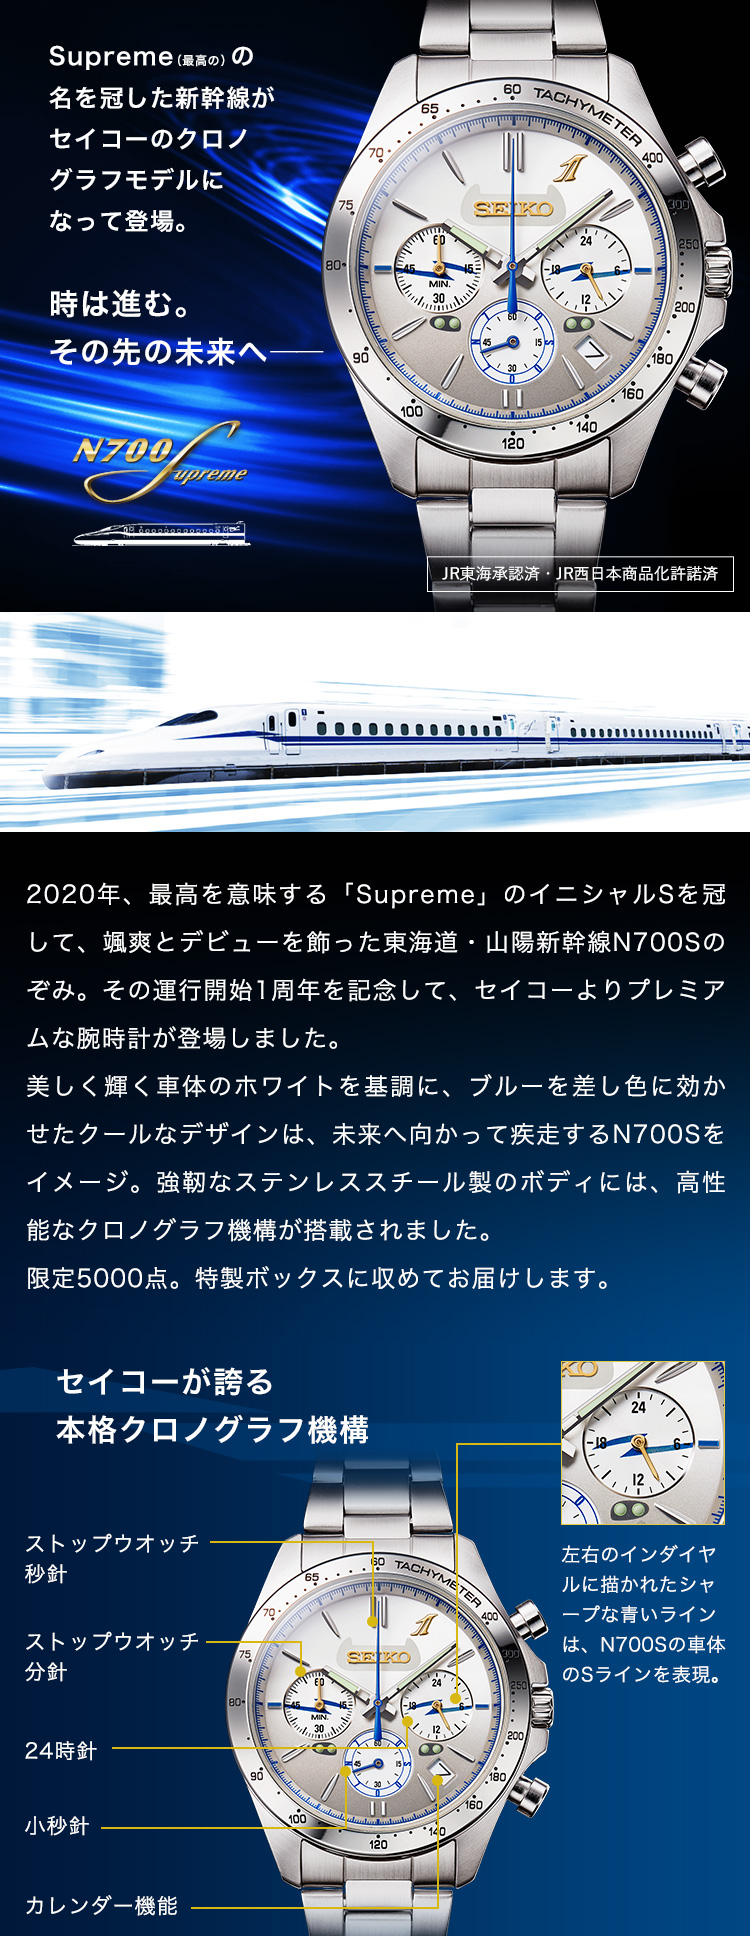 Supreme（最高の）の名を冠した新幹線がセイコーのクロノグラフモデルになって登場。時は進む。その先の未来へ――